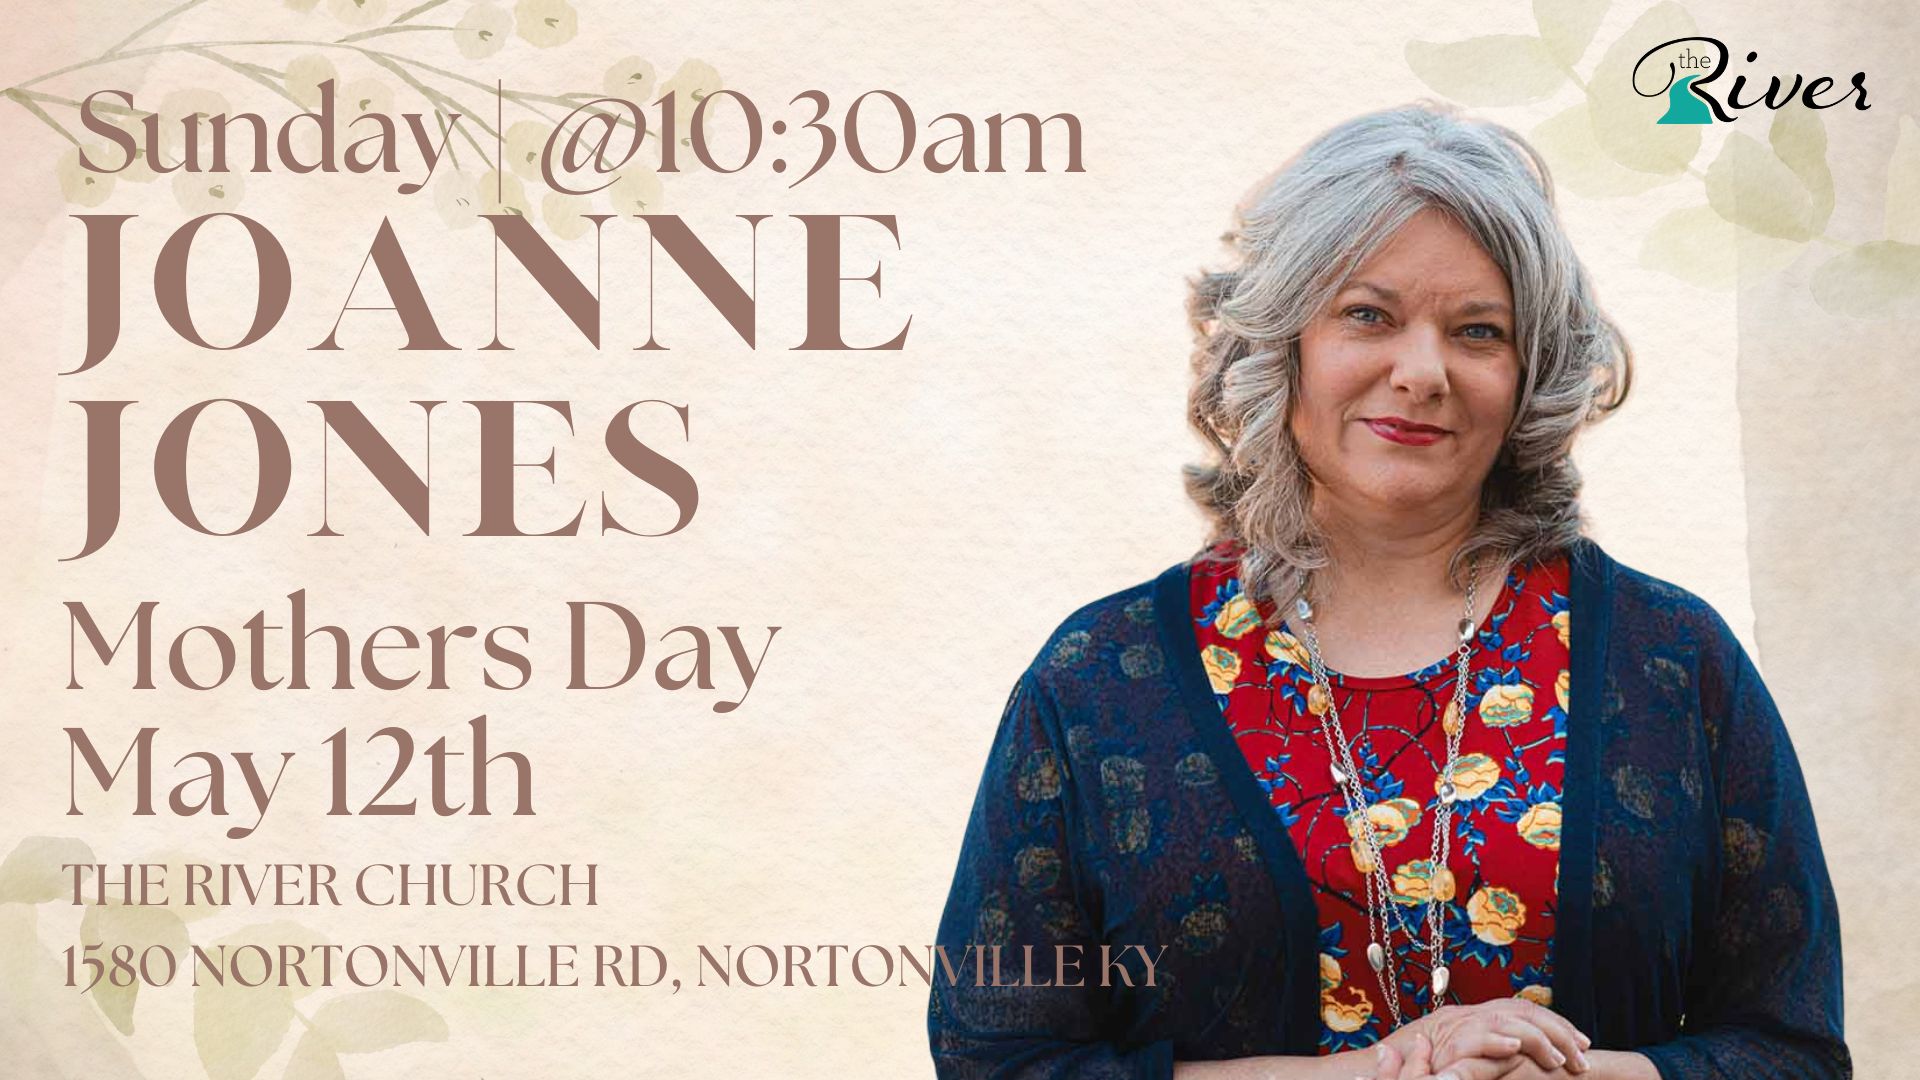 Joanne Jones Mothers Day